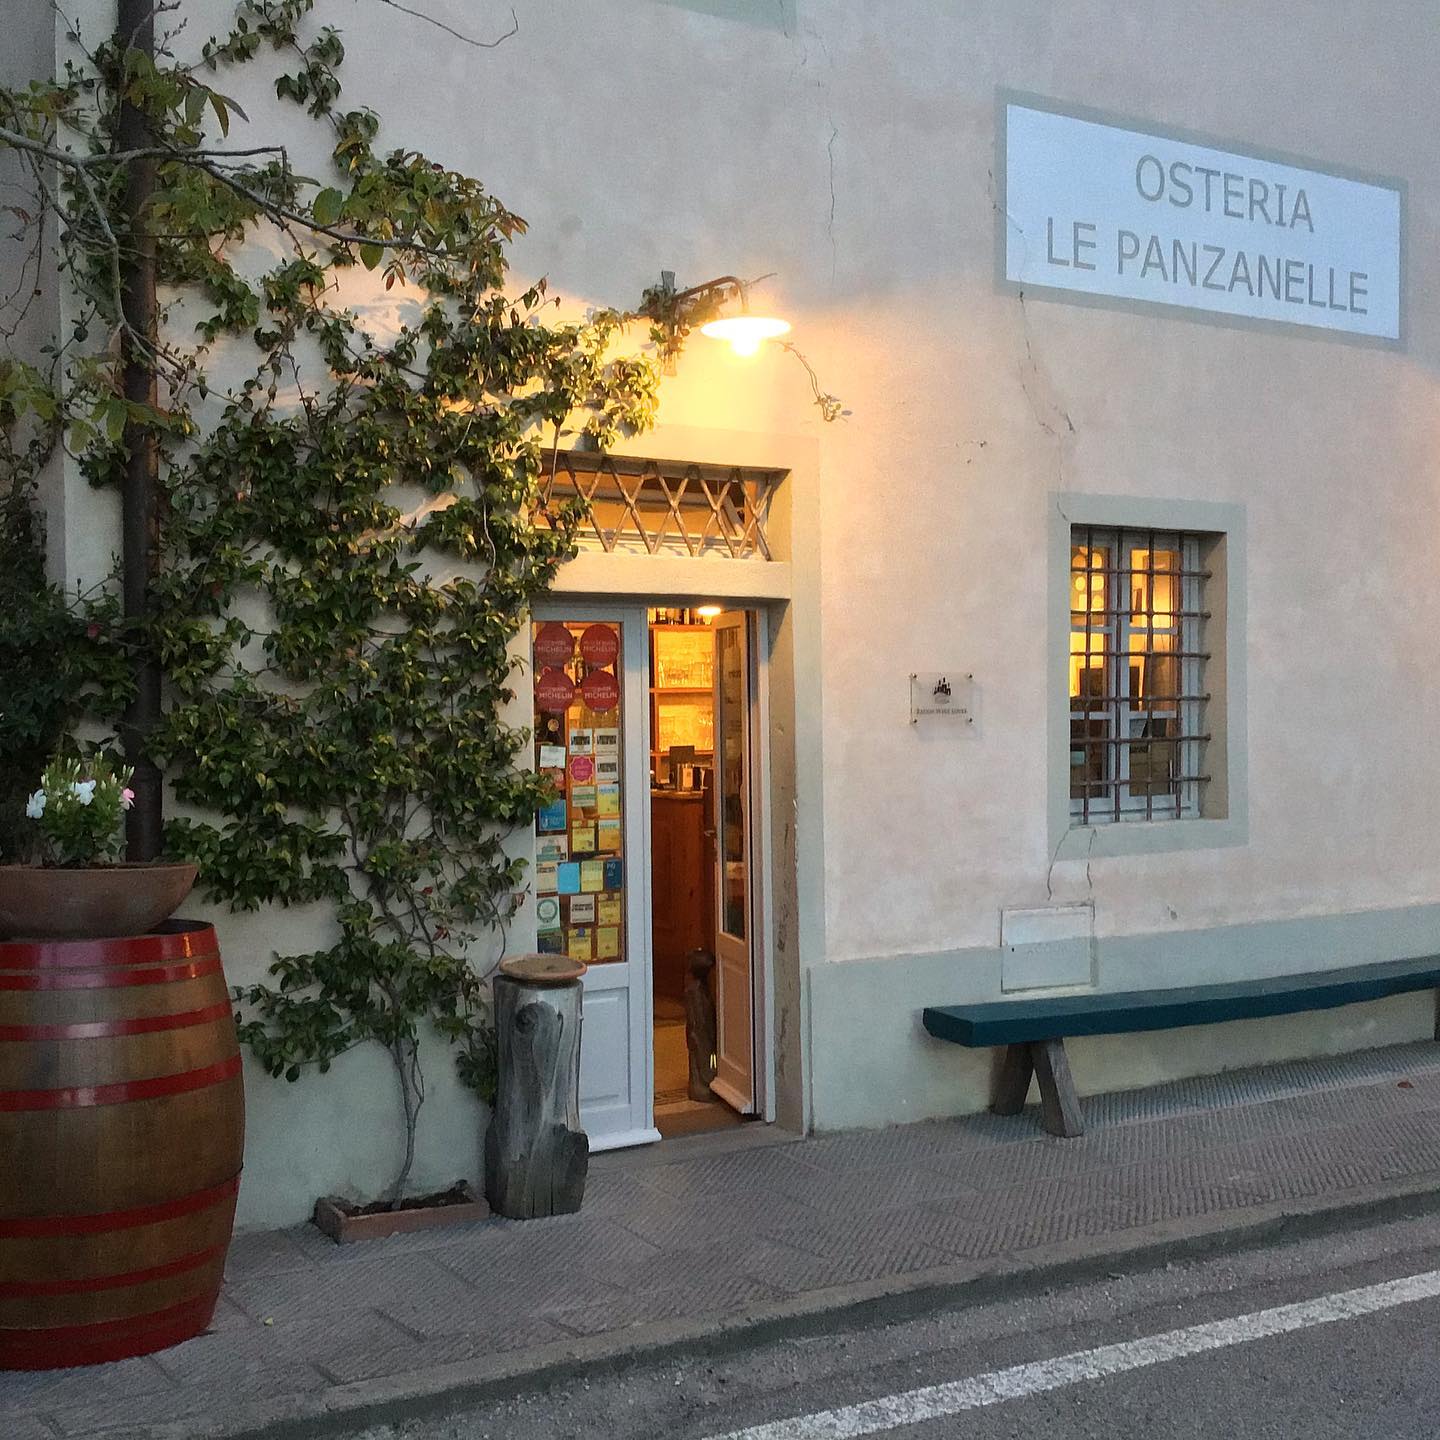 Osteria Le Panzanelle
Località Lucarelli, 29 – Radda in Chianti